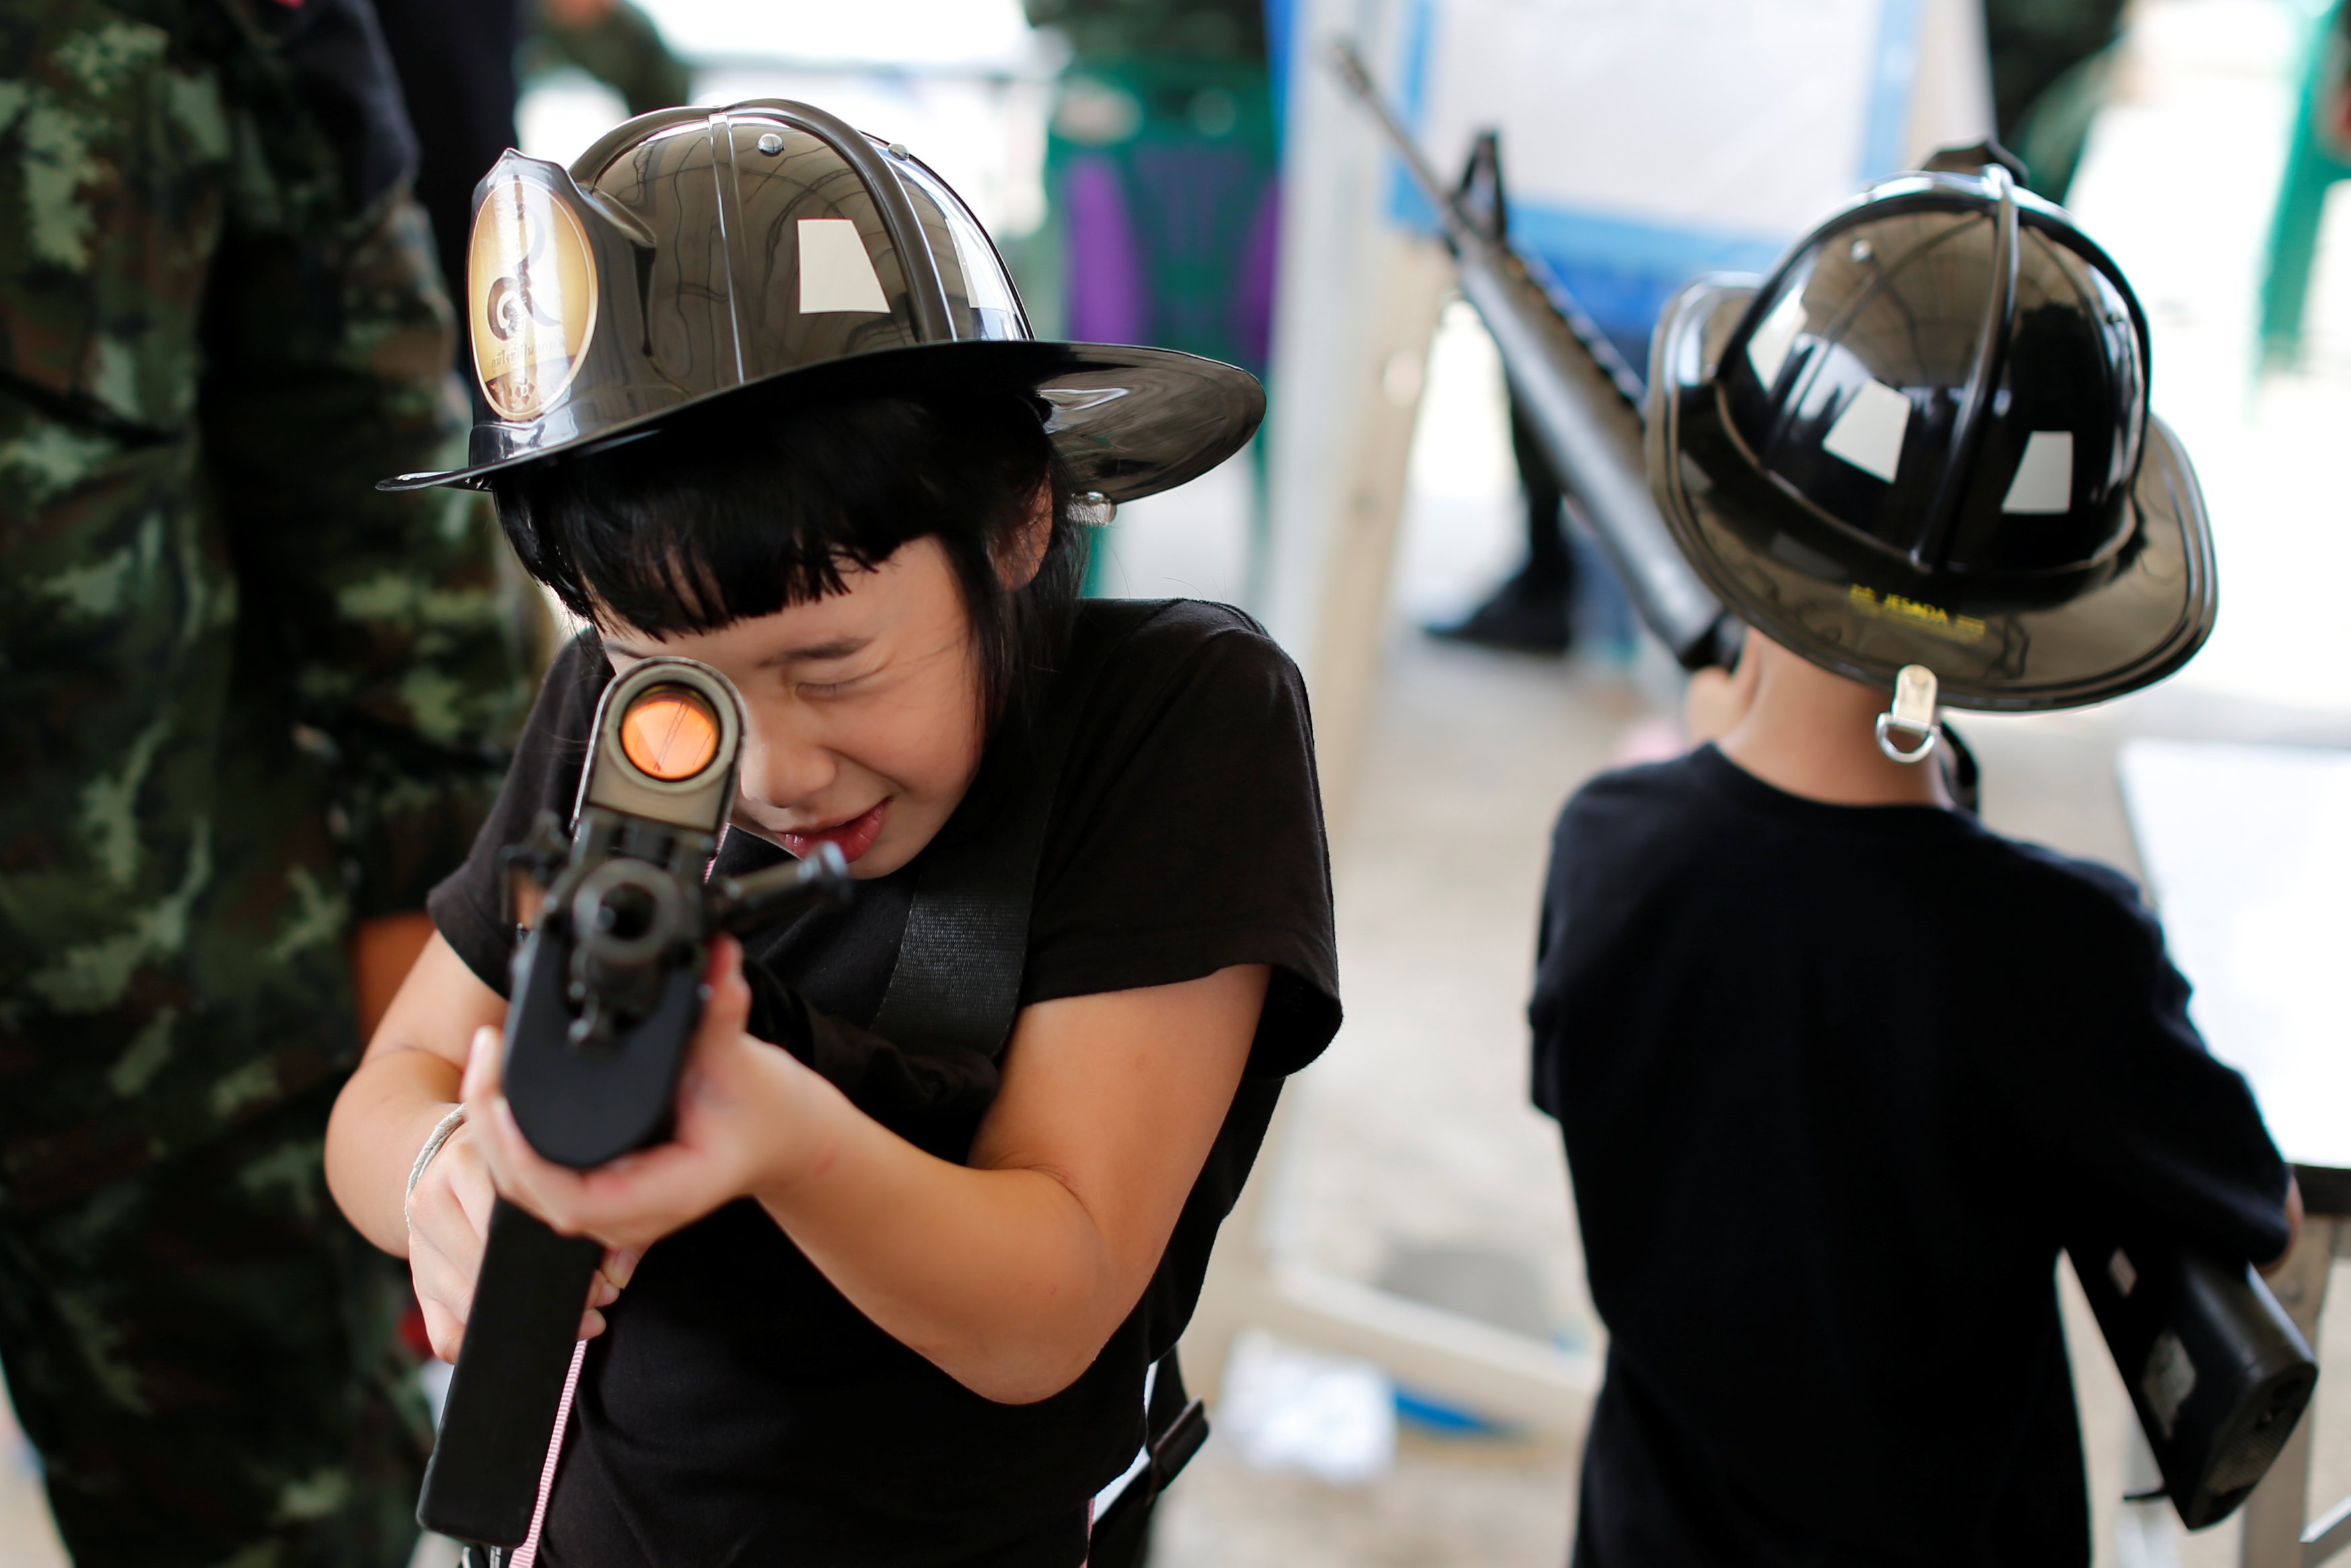 الأطفال يلعبون بالأسلحة الآلية خلال احتفالات يوم الطفل فى مقر حكومة تايلاند